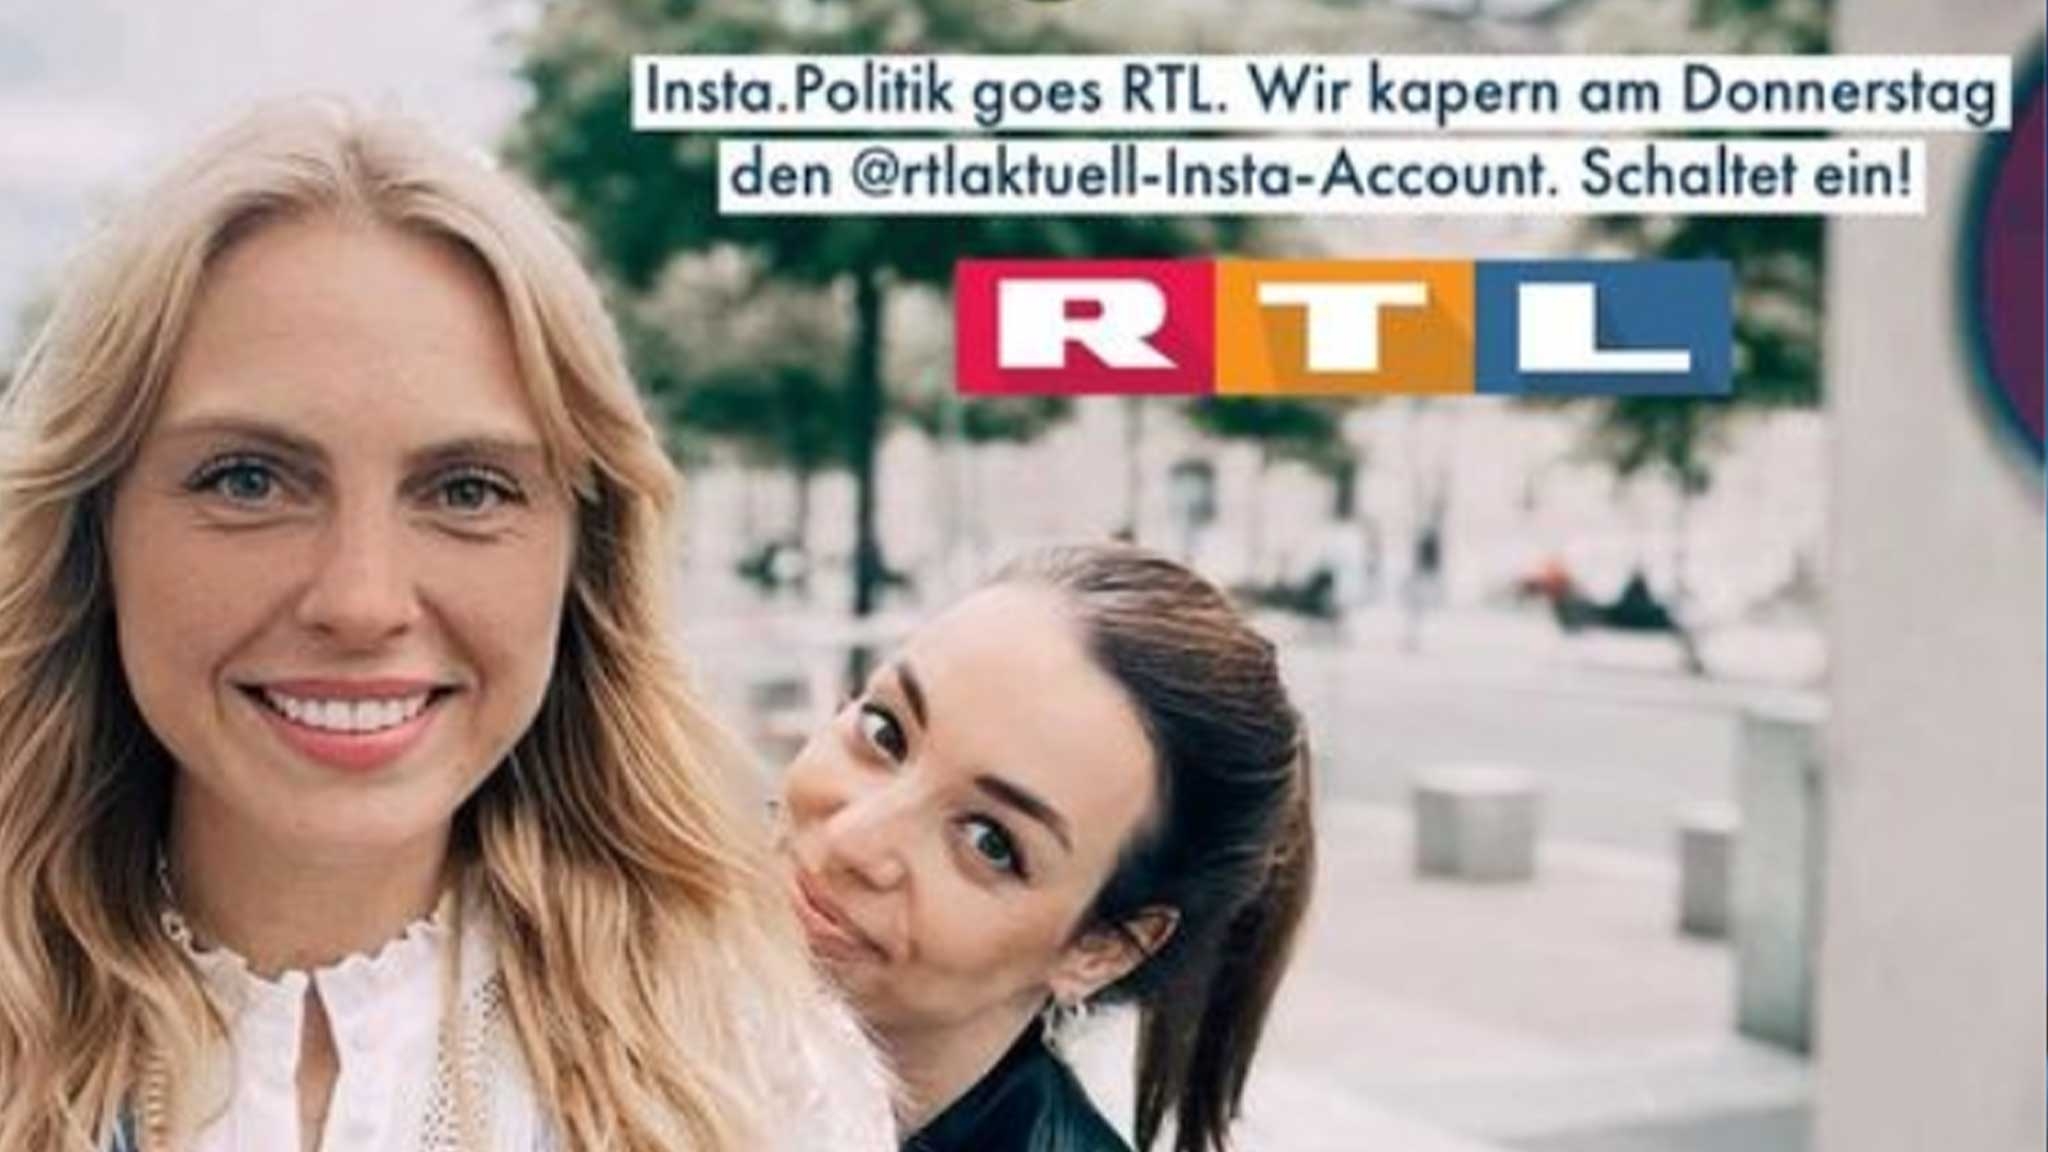 Lara Urbaniak und Janine Klose, die Macherinnen des Politkerklärkanals "Insta.Politik" sollten ein Takeover für RTL aktuell übernehmen. Das Format wurde jetzt kurzfristig abgesagt. 